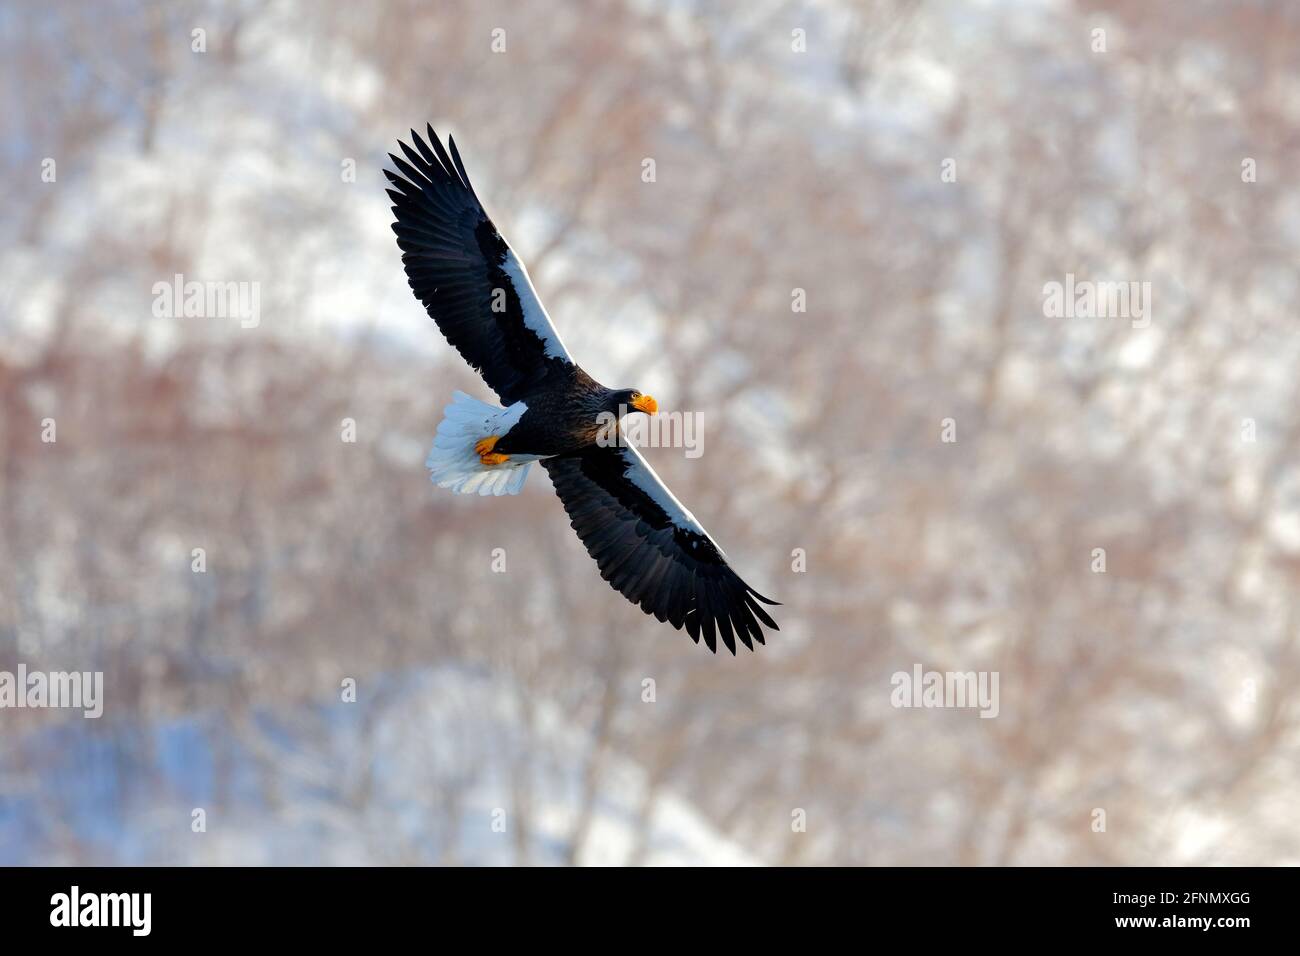 Les oiseaux volent au-dessus des collines. Aigle du Japon dans l'habitat d'hiver. Paysage de montagne d'hiver avec oiseau. Aigle mer de Steller, oiseau de proie volant, avec Photo Stock -